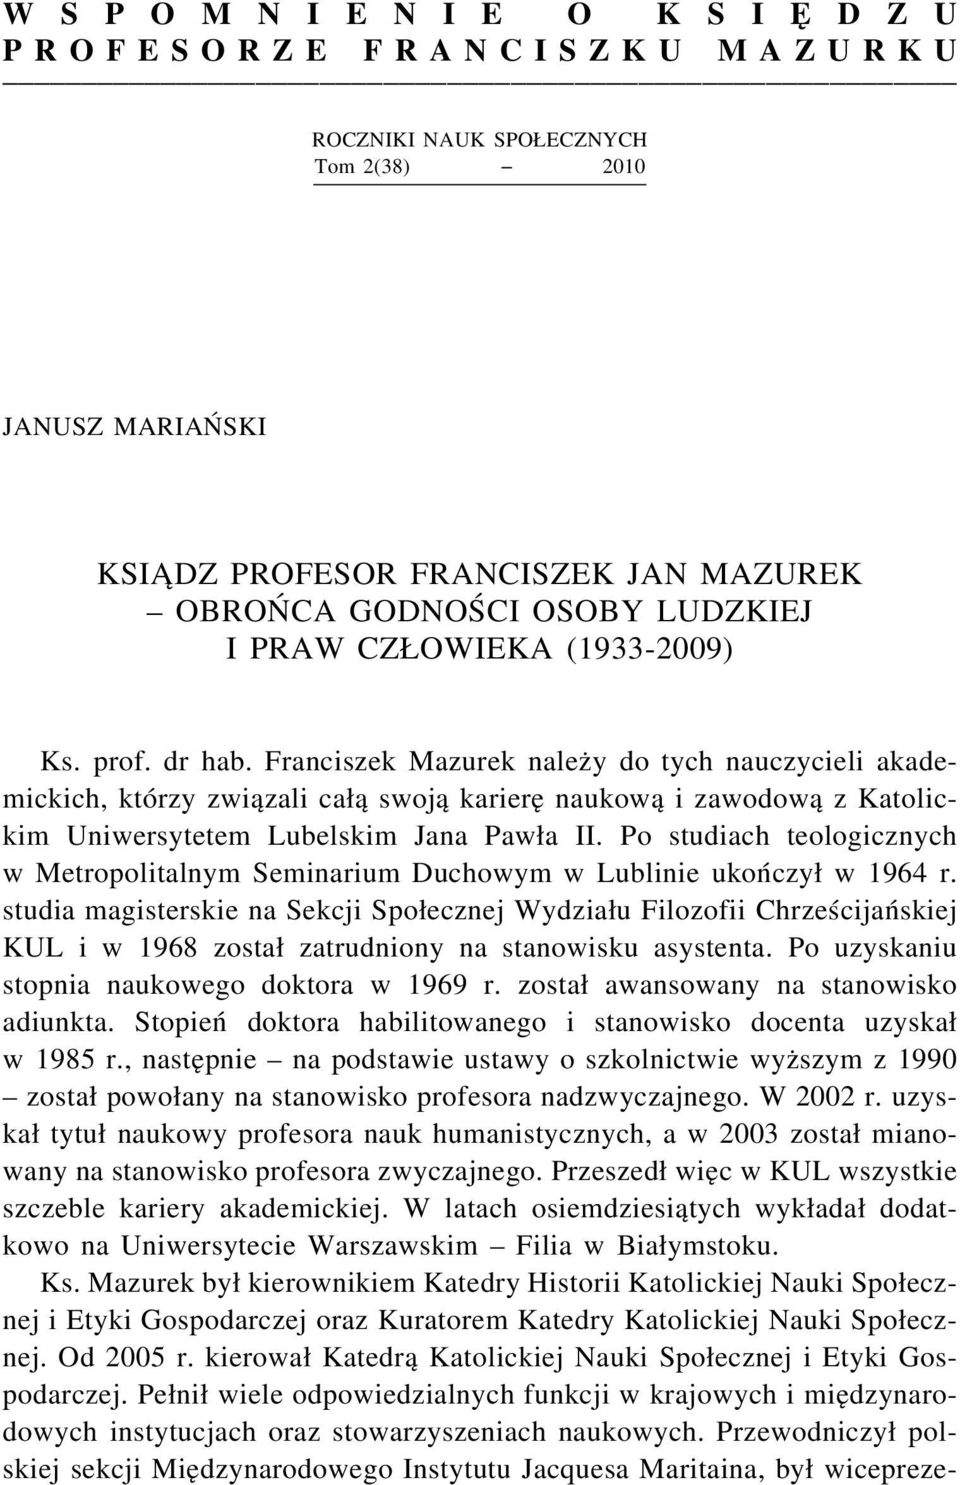 Franciszek Mazurek należy do tych nauczycieli akademickich, którzy związali całą swoją karierę naukową i zawodową z Katolickim Uniwersytetem Lubelskim Jana Pawła II.